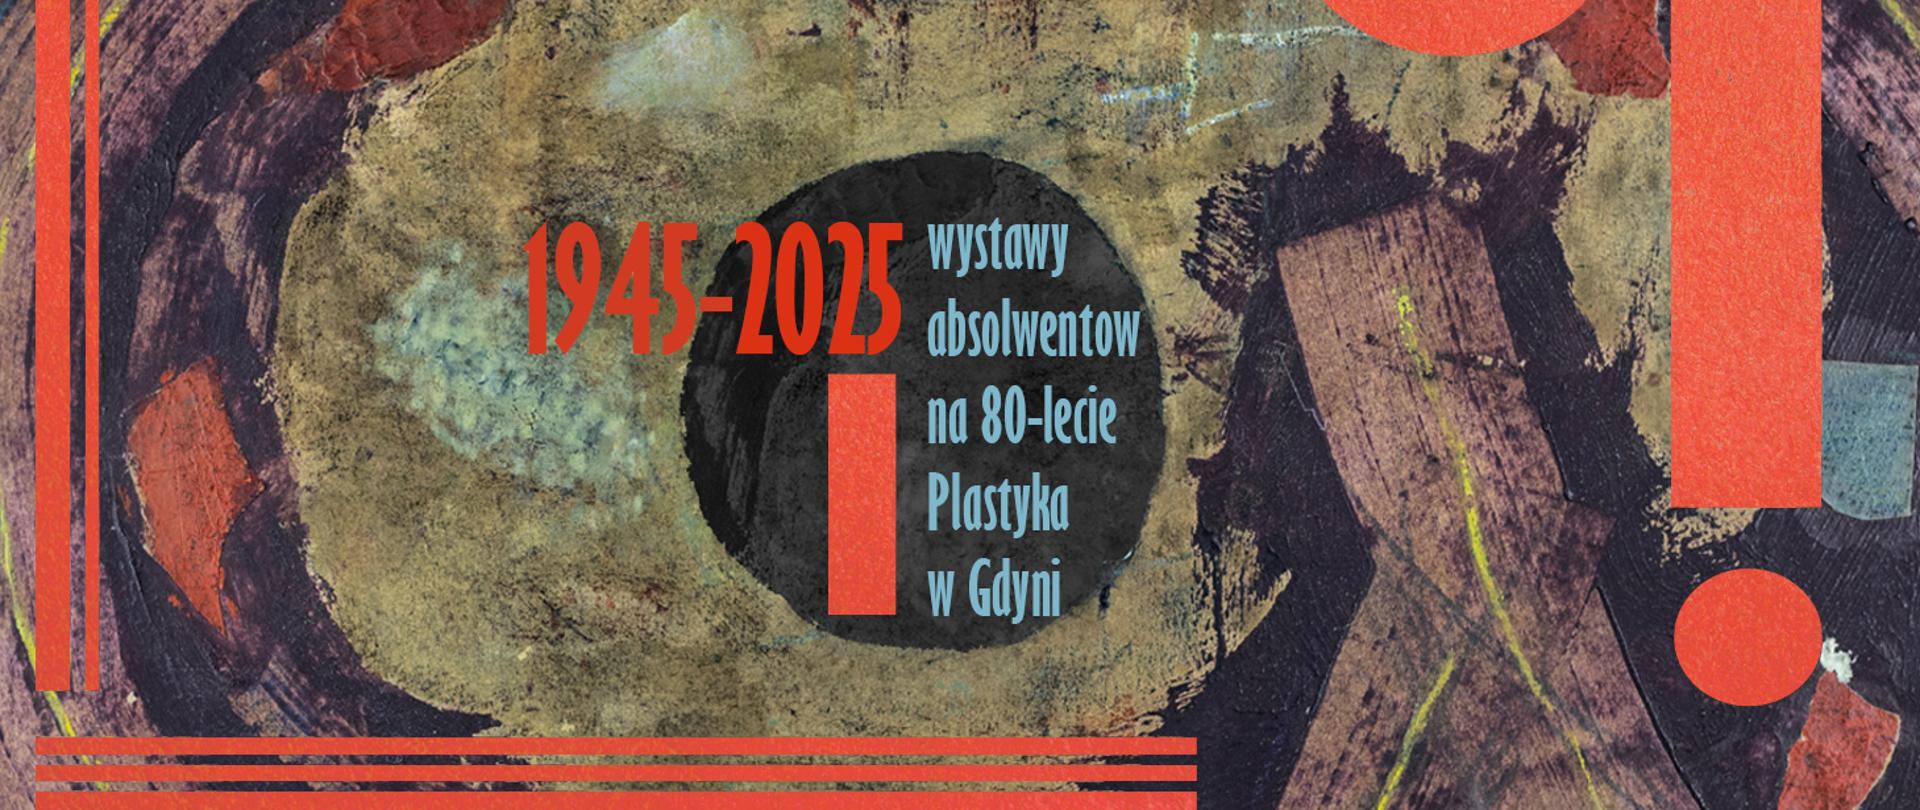 80-Lecie Plastyka w Gdyni